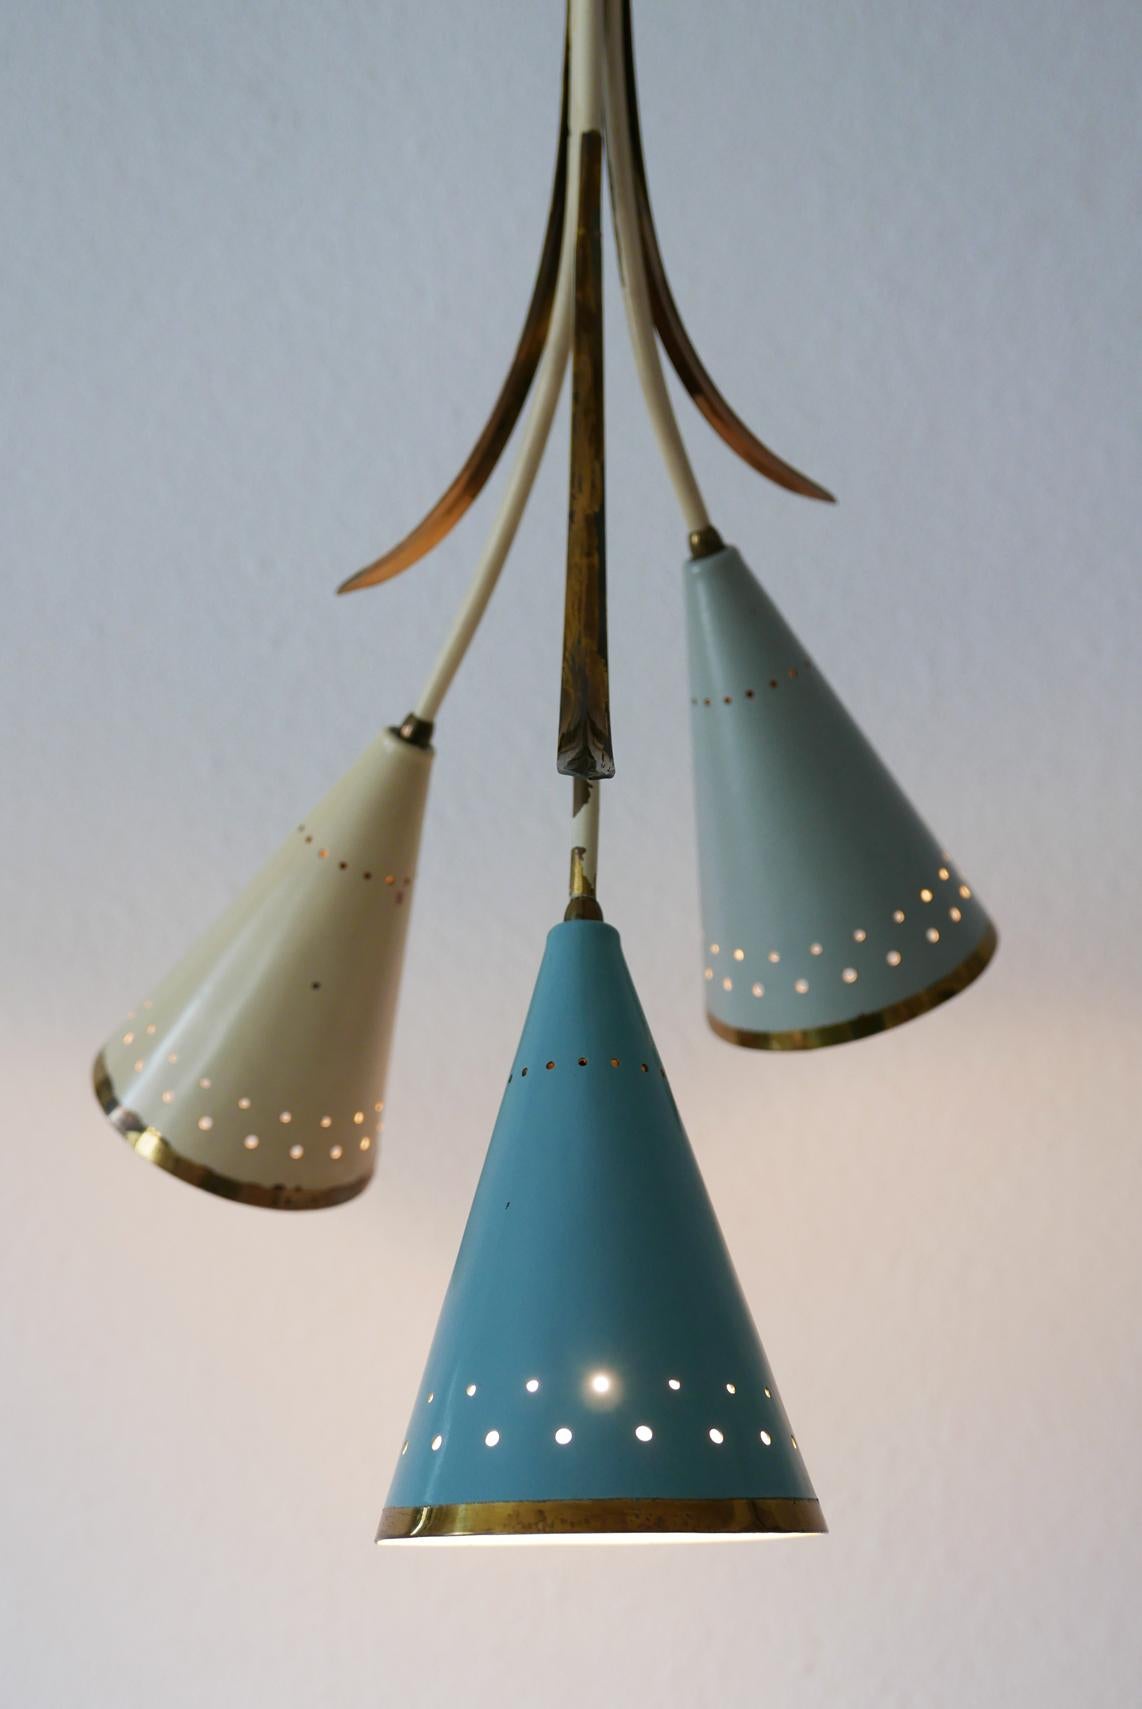 Exceptionnel lustre ou lampe suspendue Sputnik à trois bras, de style moderne du milieu du siècle, aux couleurs ravissantes. Fabriqué probablement dans les années 1950 en Allemagne.

Exécuté en tôle et tubes de laiton. Les abat-jour en laiton